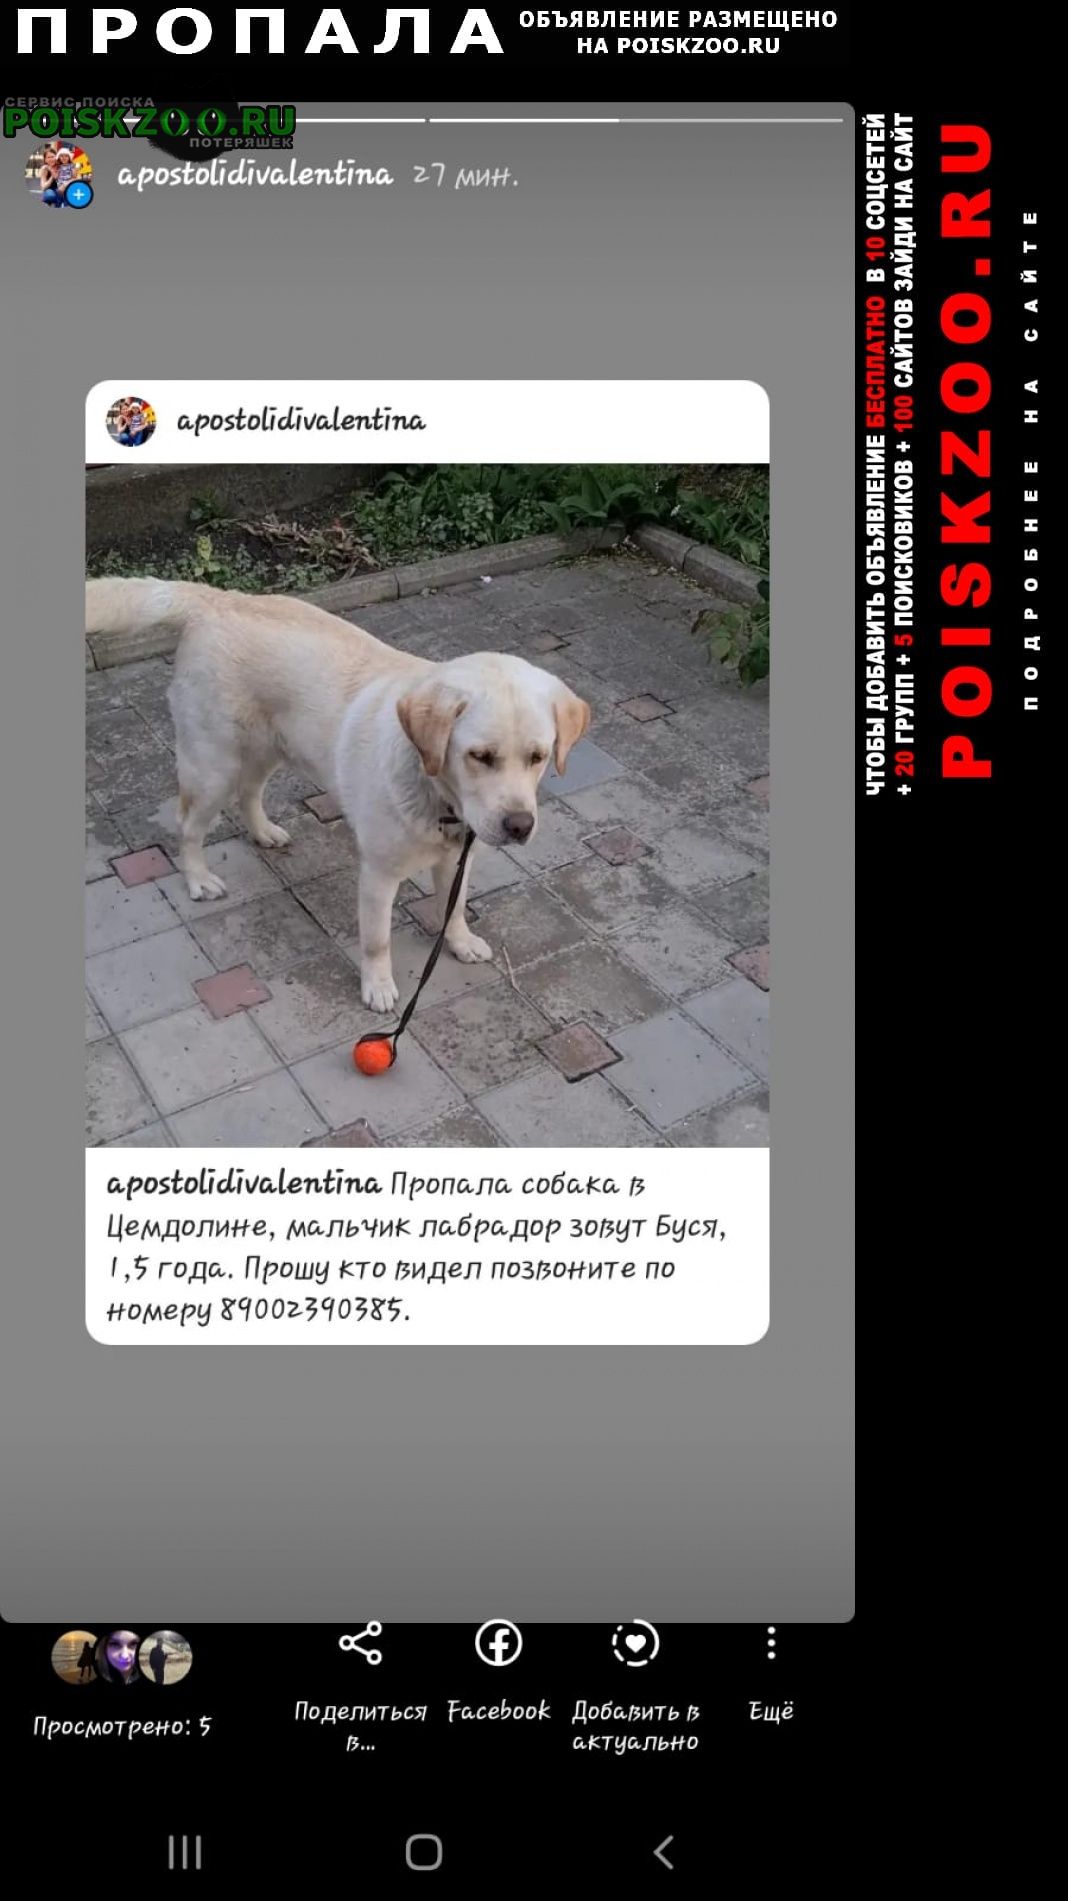 Пропала собака кобель в цемдолине Новороссийск